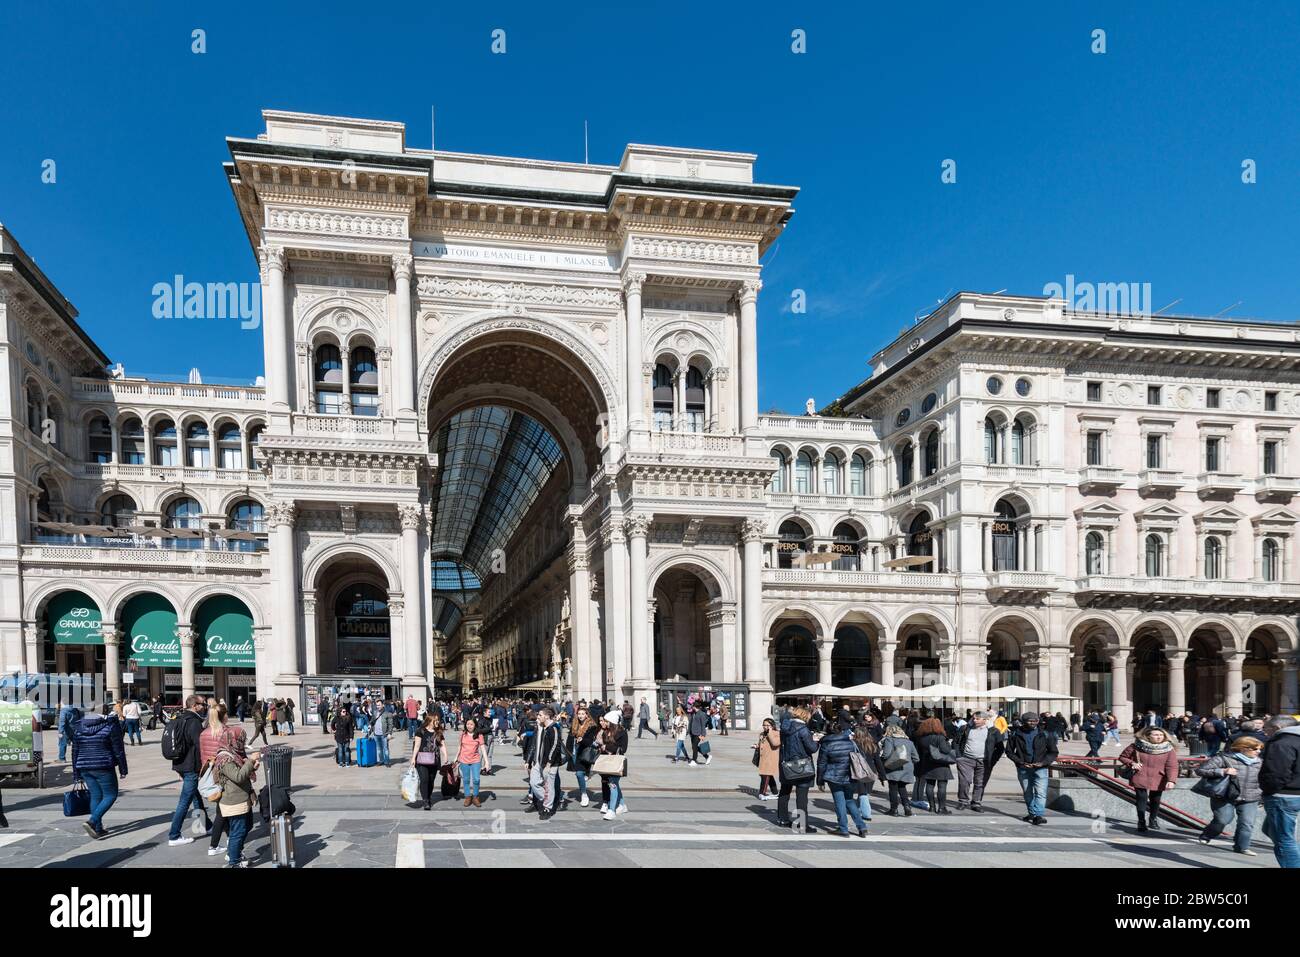 MILÁN, ITALIA - 16, MARZO, 2018: Imagen horizontal del exterior de la Galería Vittorio Emanuele II, un recorrido turístico de Milán, Italia Foto de stock